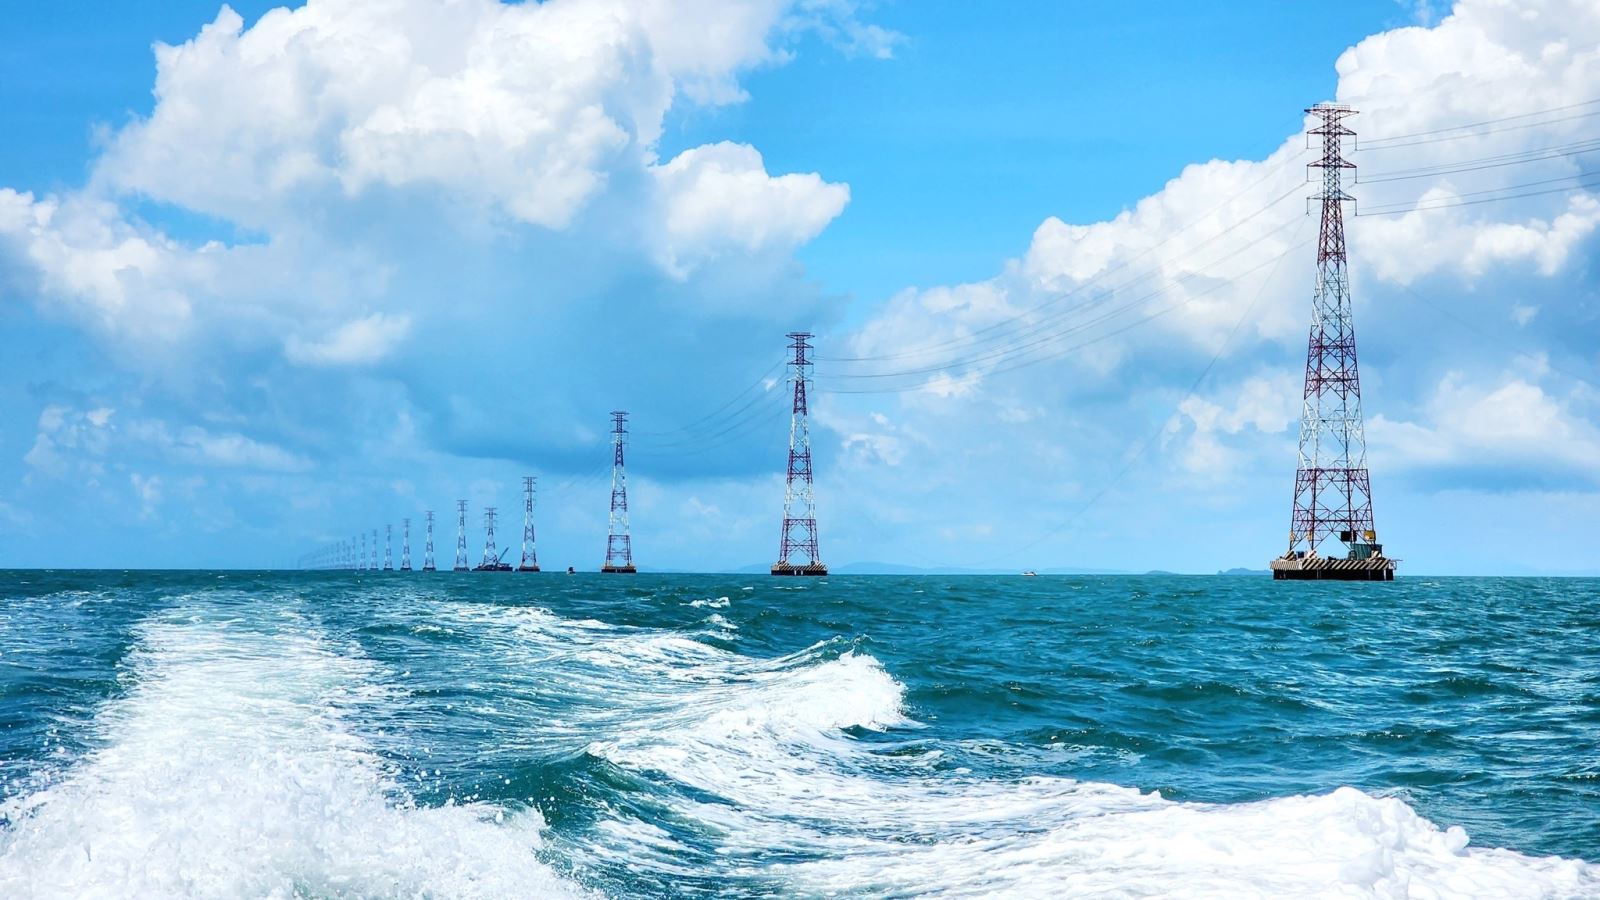 Công trình đường dây vượt biển trên không cấp điện áp 220 kV dài nhất khu vực Đông Nam Á